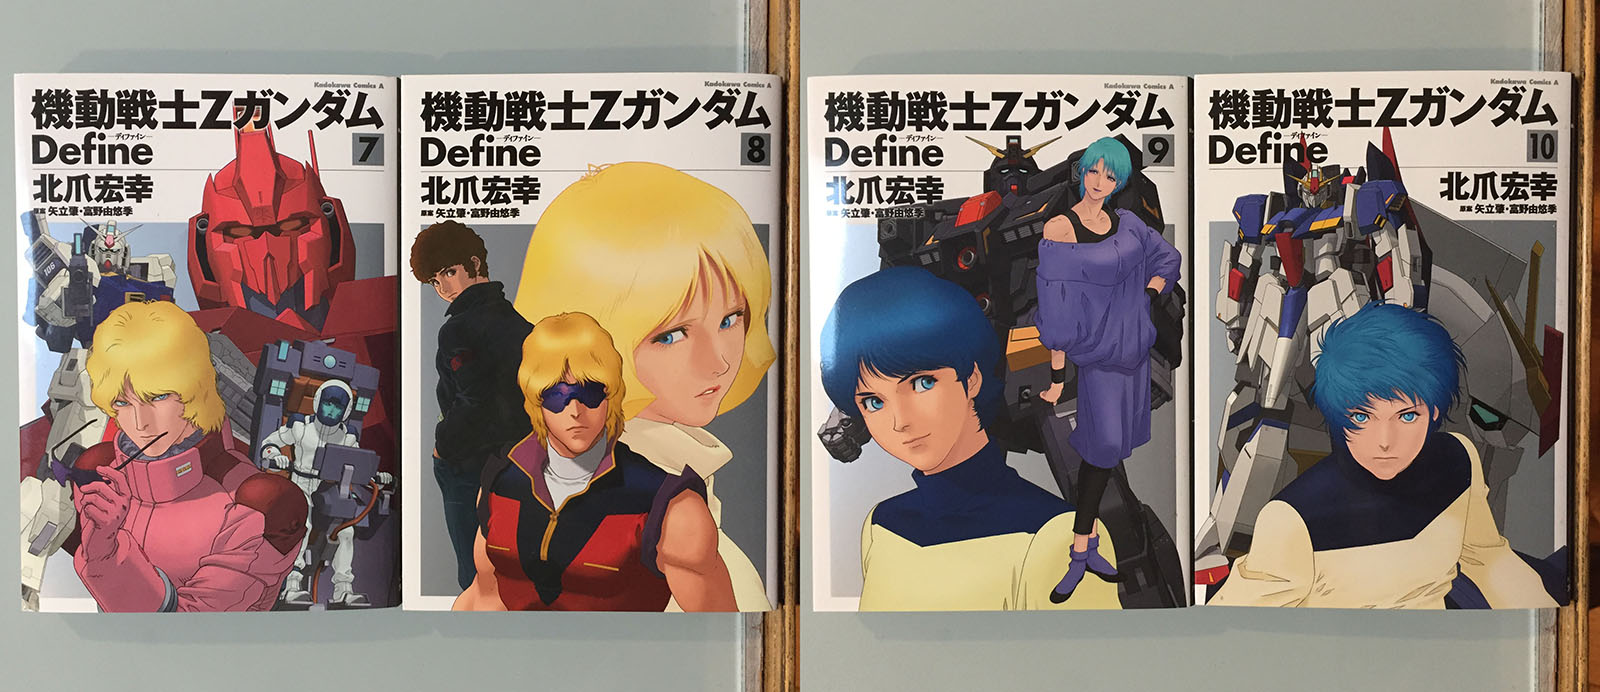 Mobile Suit Gundam books, set 2 | Tim Eldred